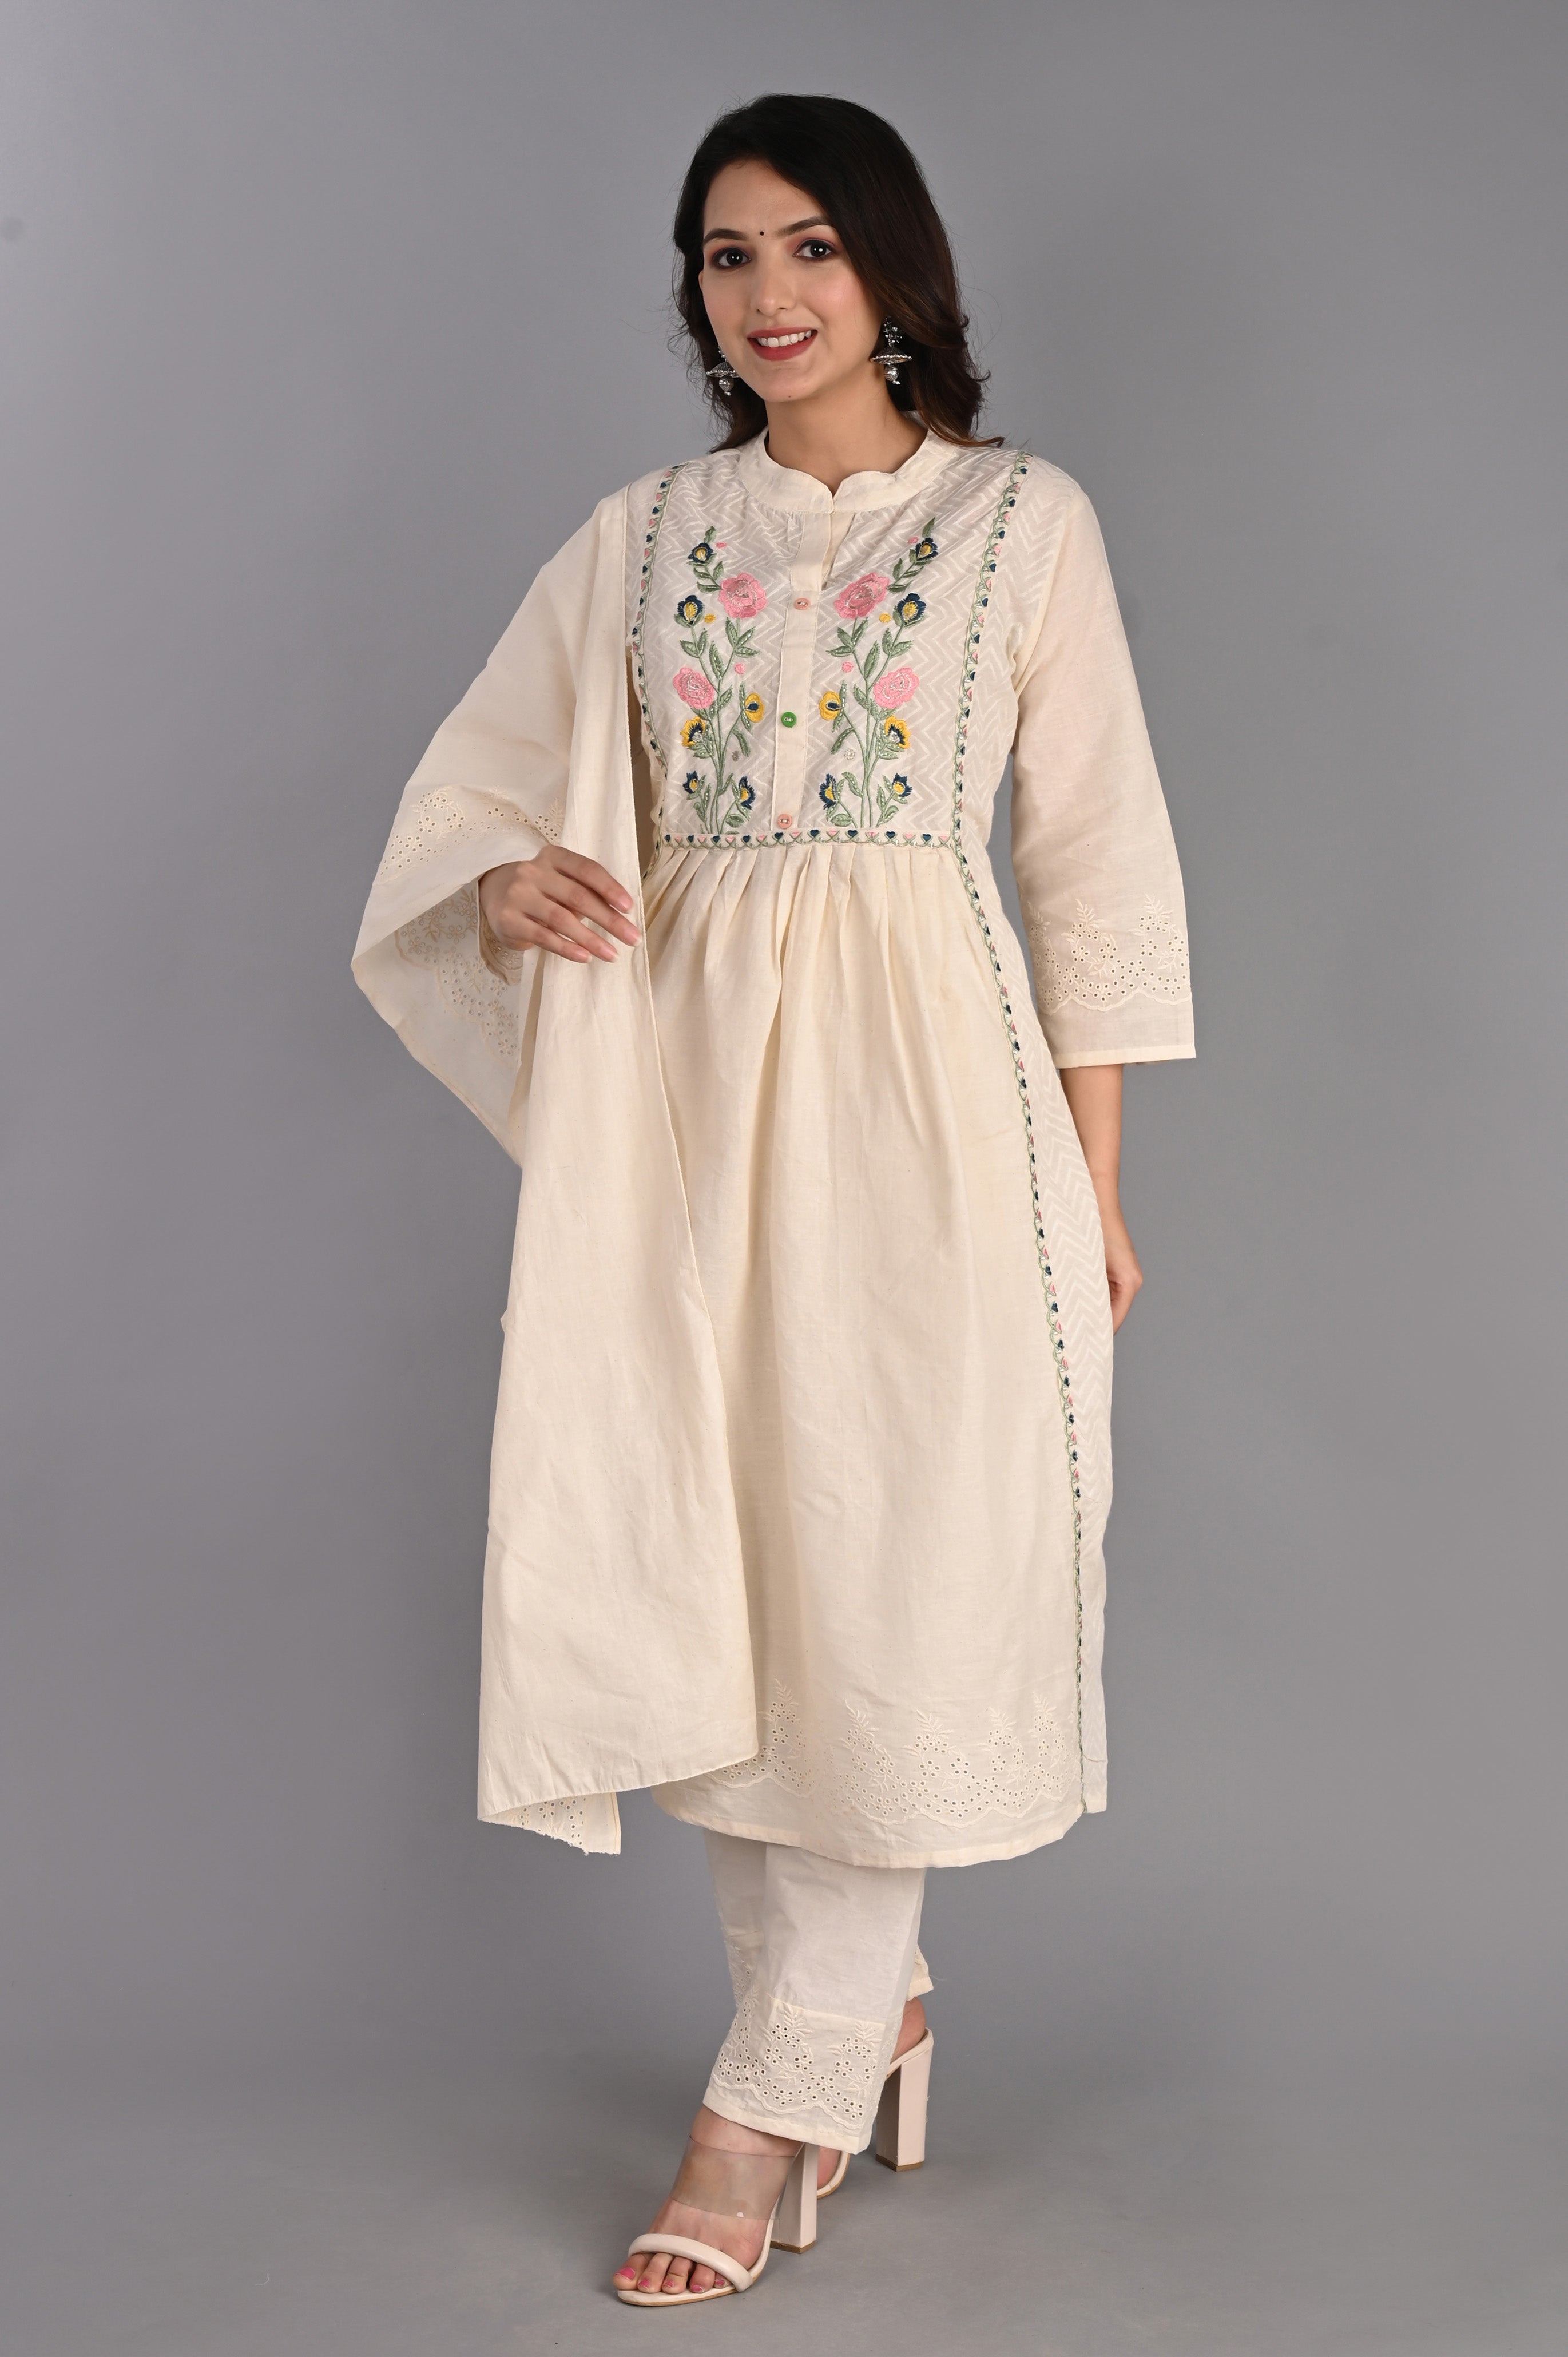 Buy Latest Designer Kurtis Online for Woman  Handloom Cotton Silk  Designer Kurtis Online  Sujat  Silk kurti designs Plain kurti designs  Cotton kurtis online